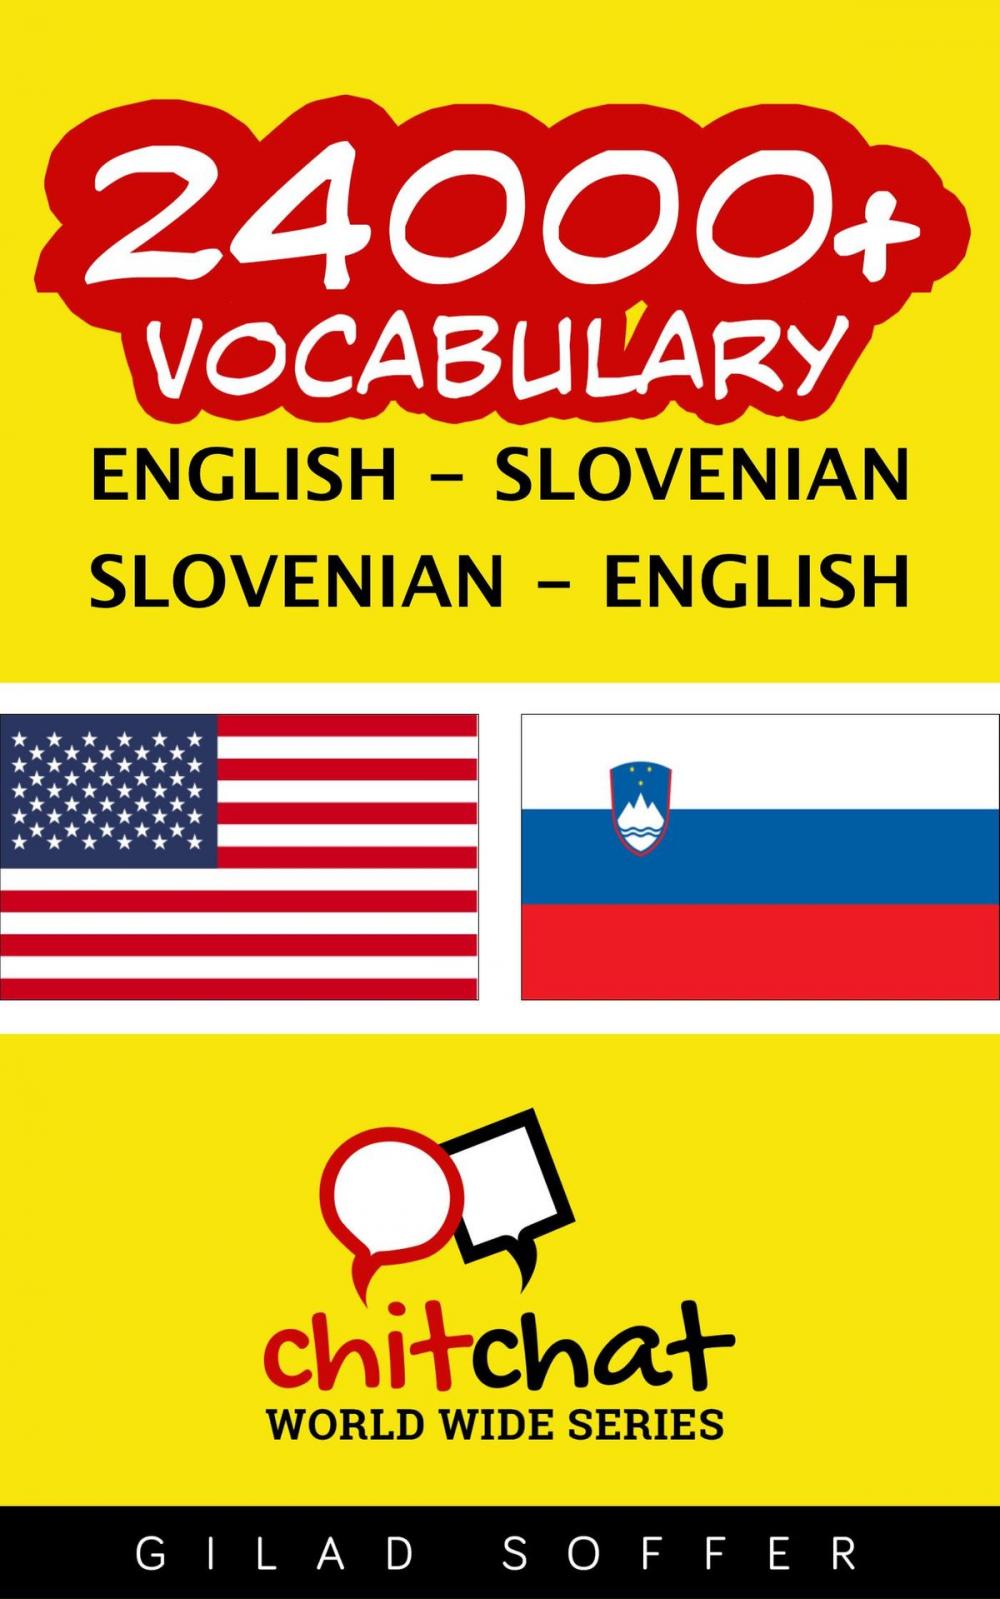 Big bigCover of 24000+ Vocabulary English - Slovenian